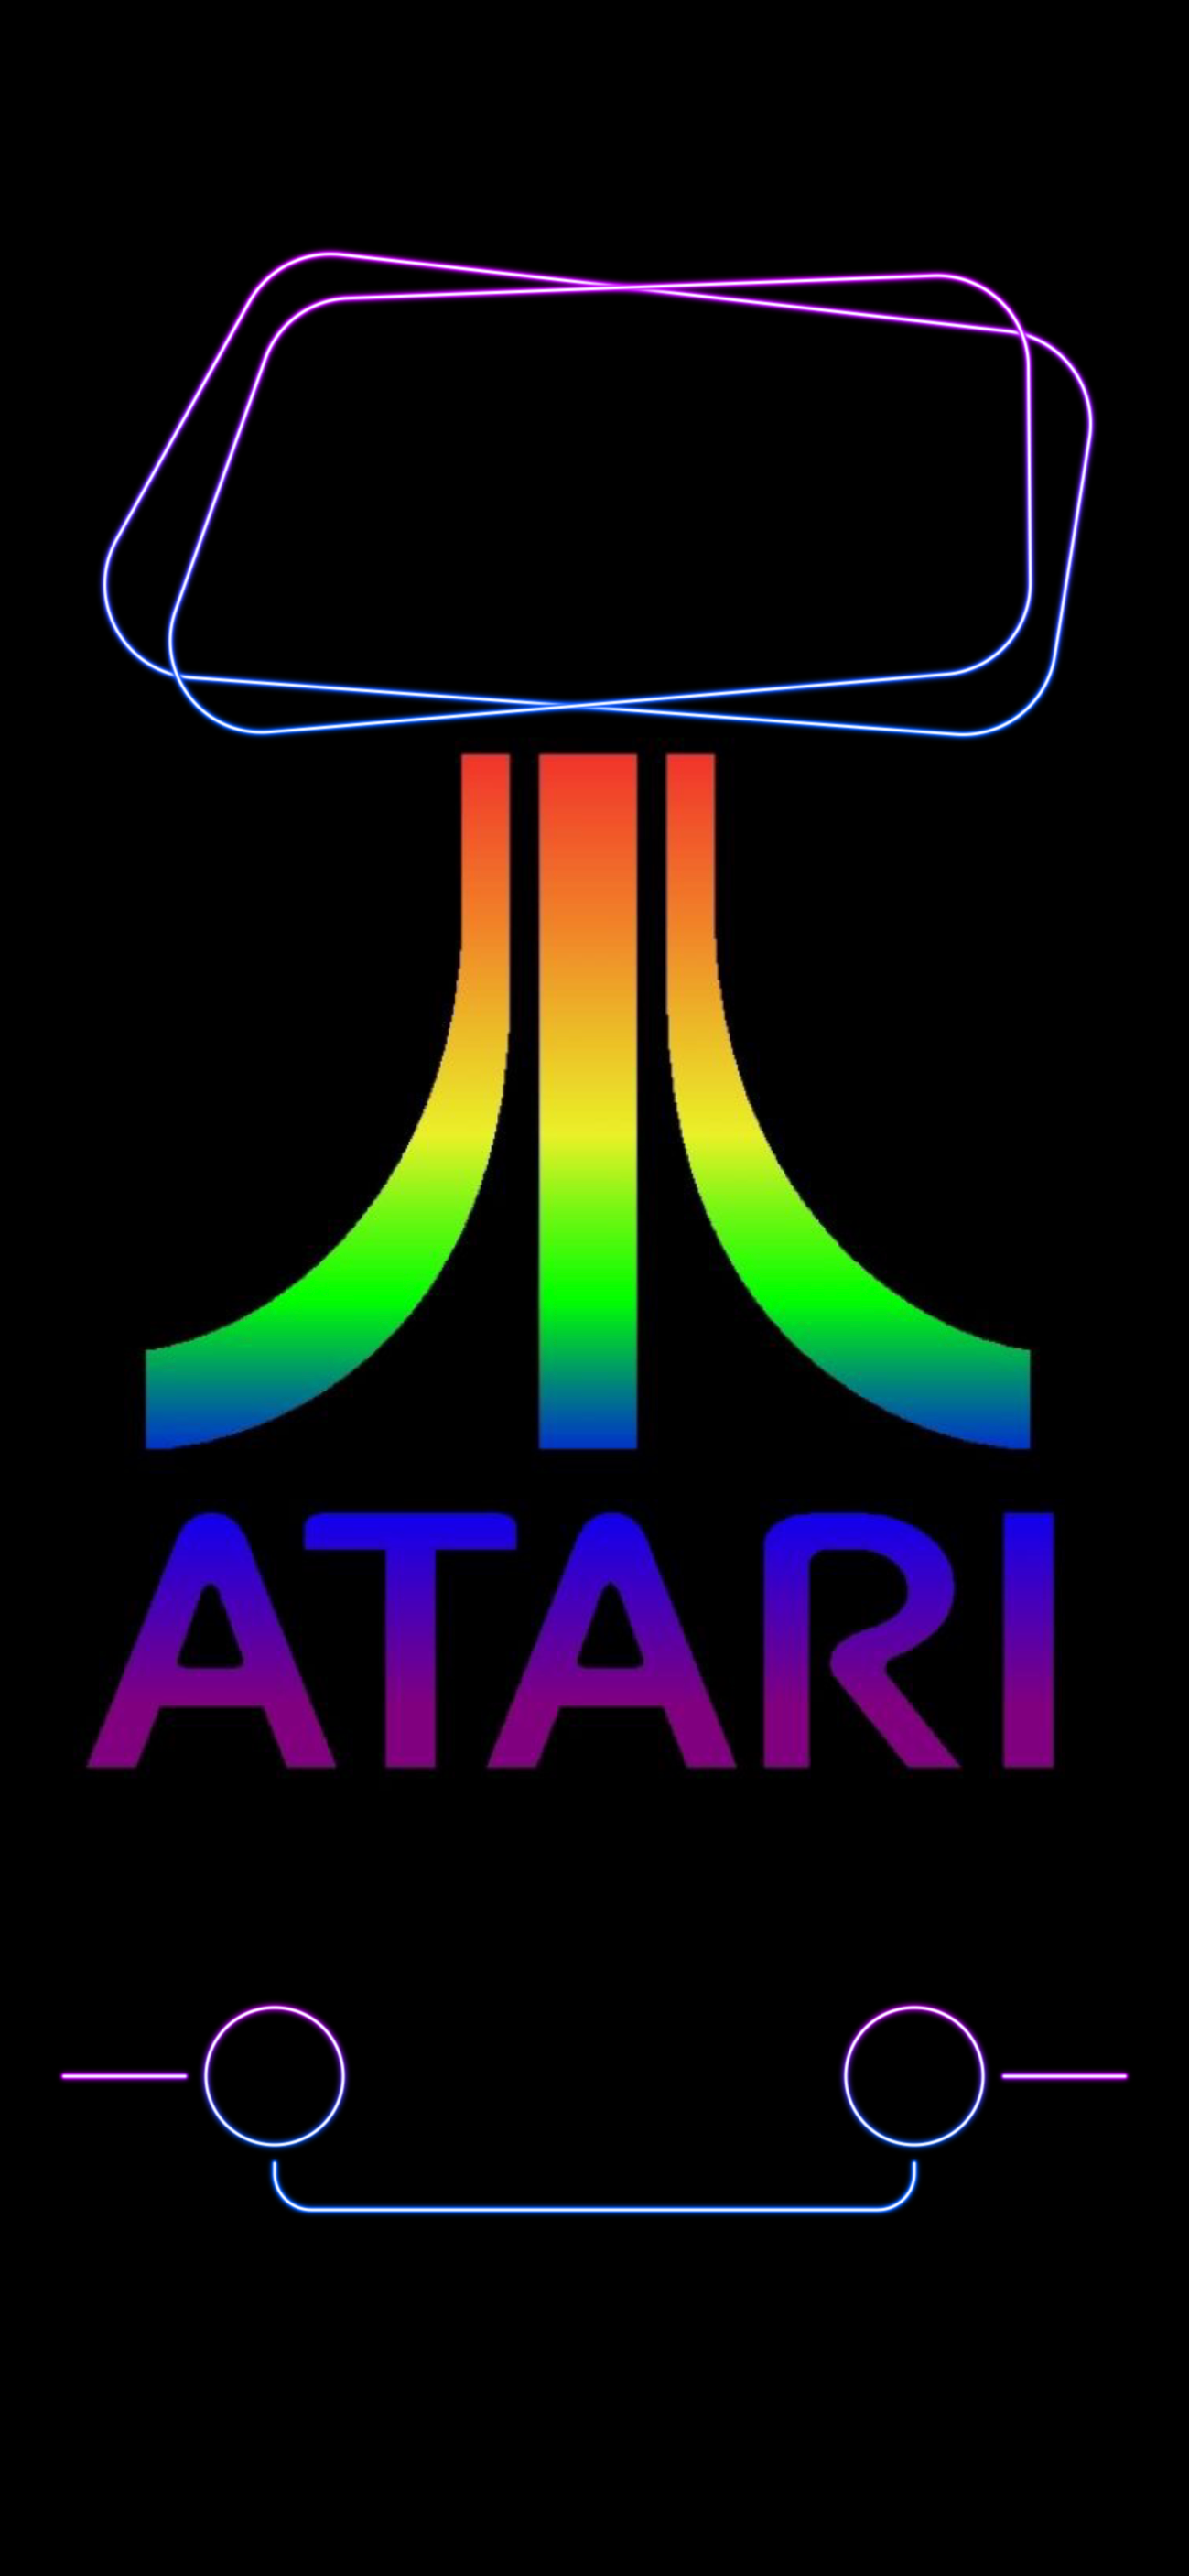 77 Atari Wallpaper  WallpaperSafari